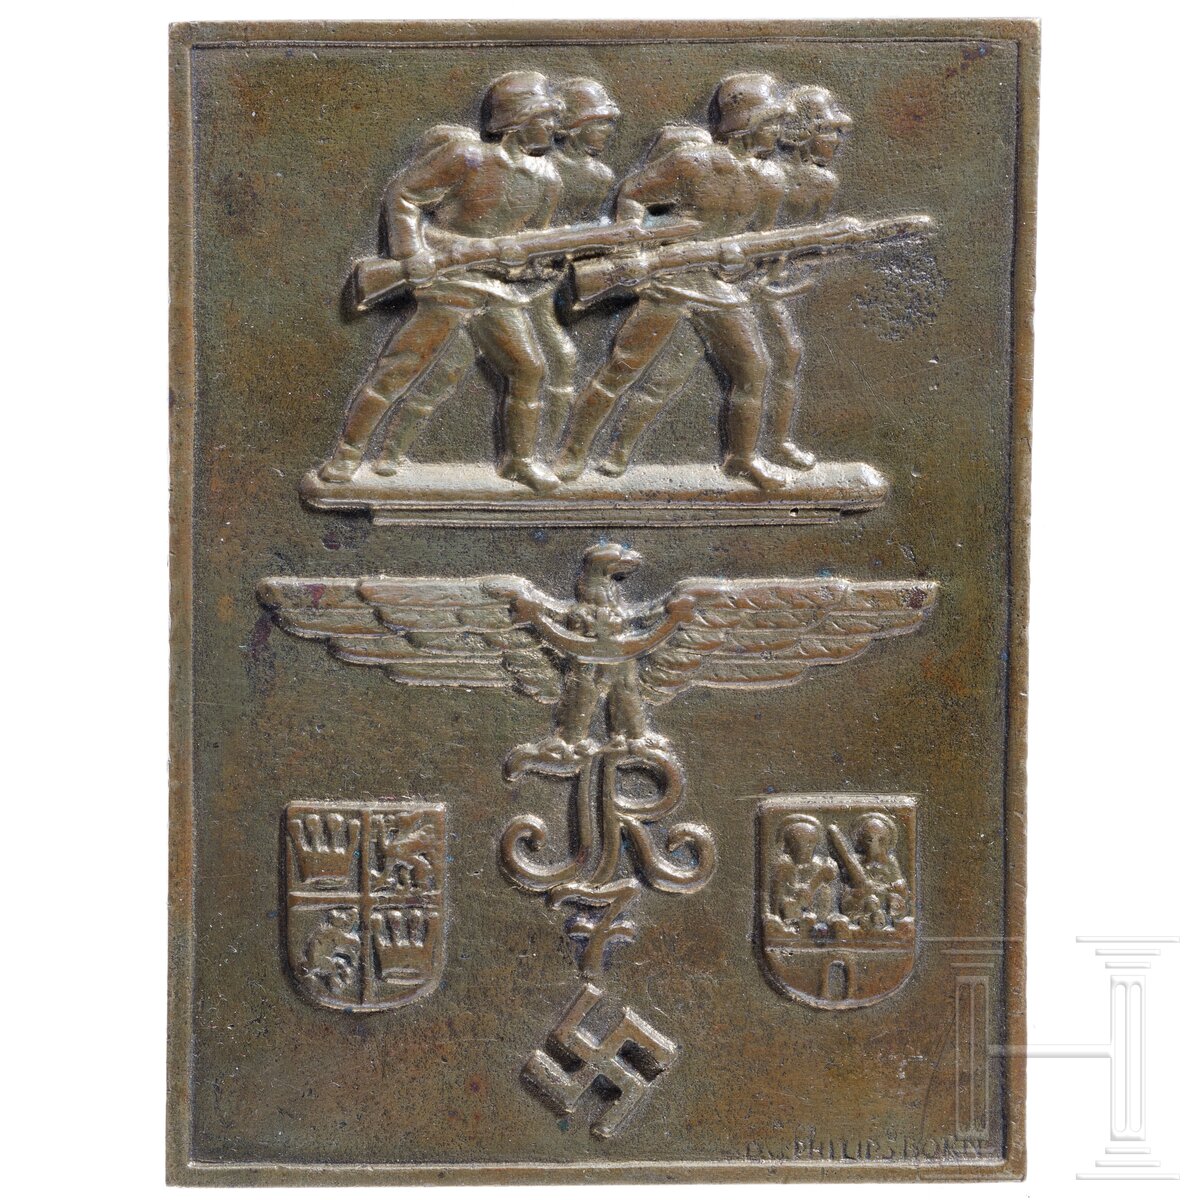 Ehrenplakette des Infanterie-Regiments 7 "Schweidnitz"